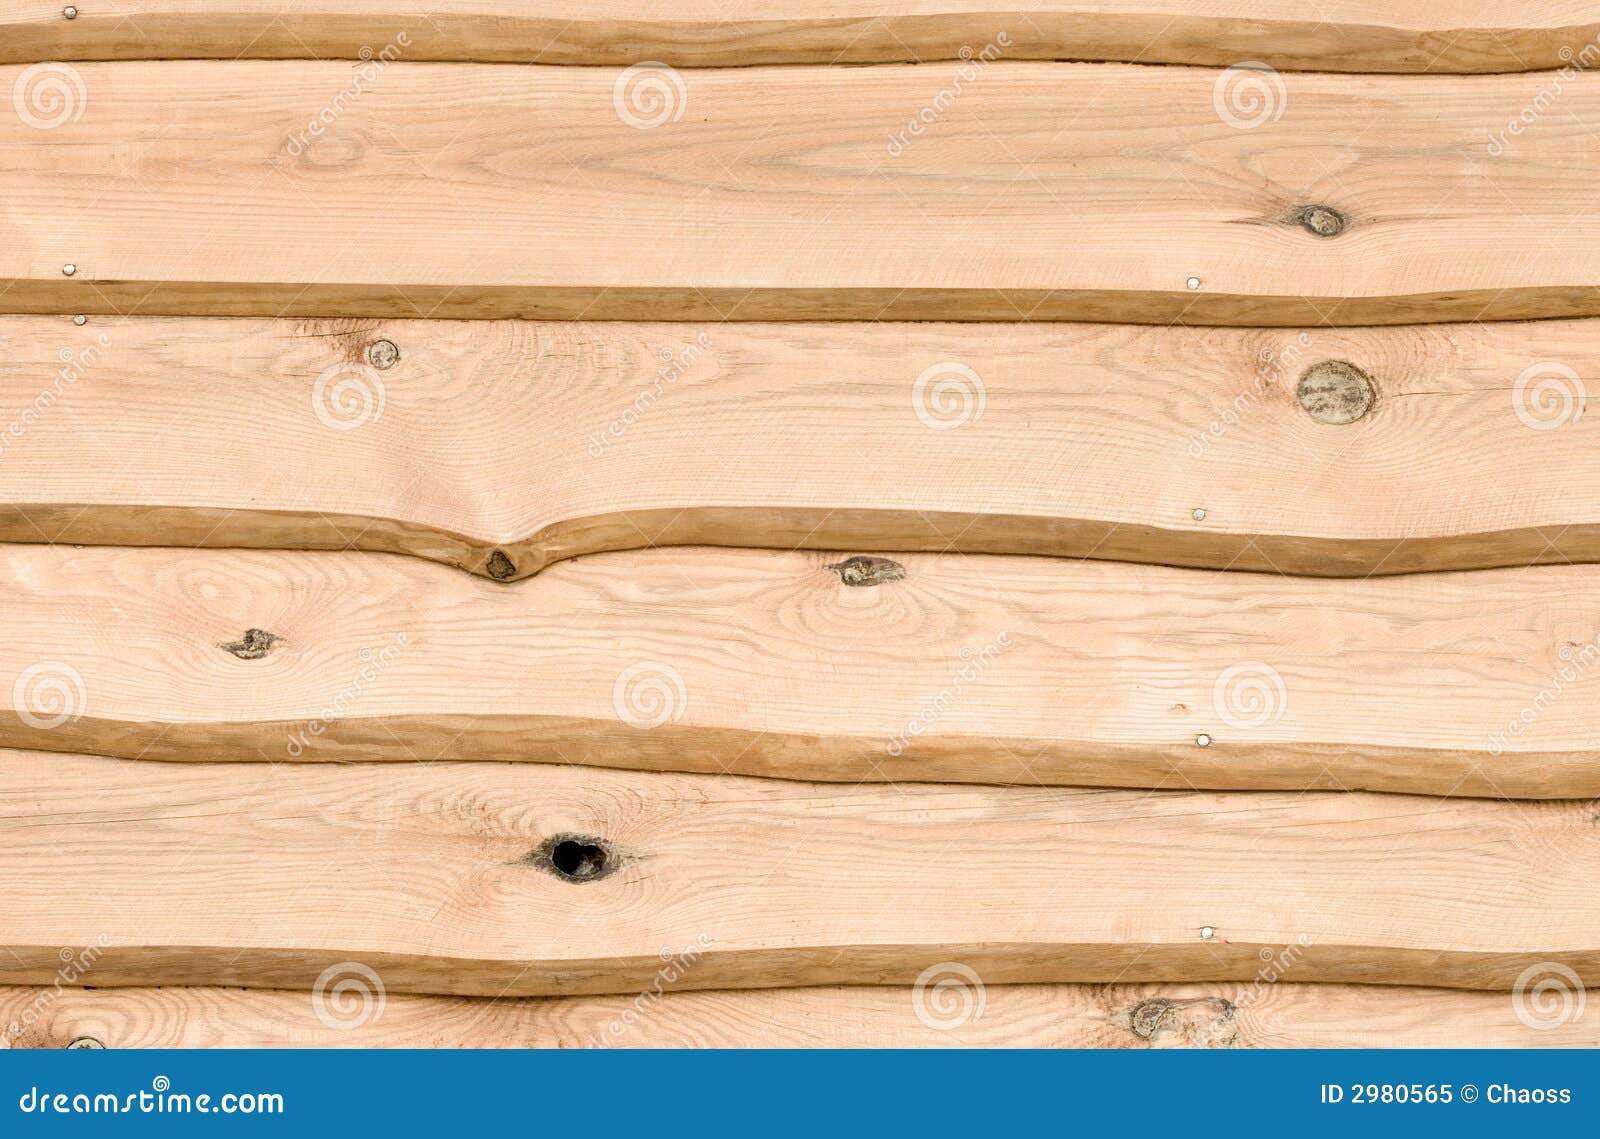 Ruwe houten planken stock afbeelding. Image of bruin, - 2980565